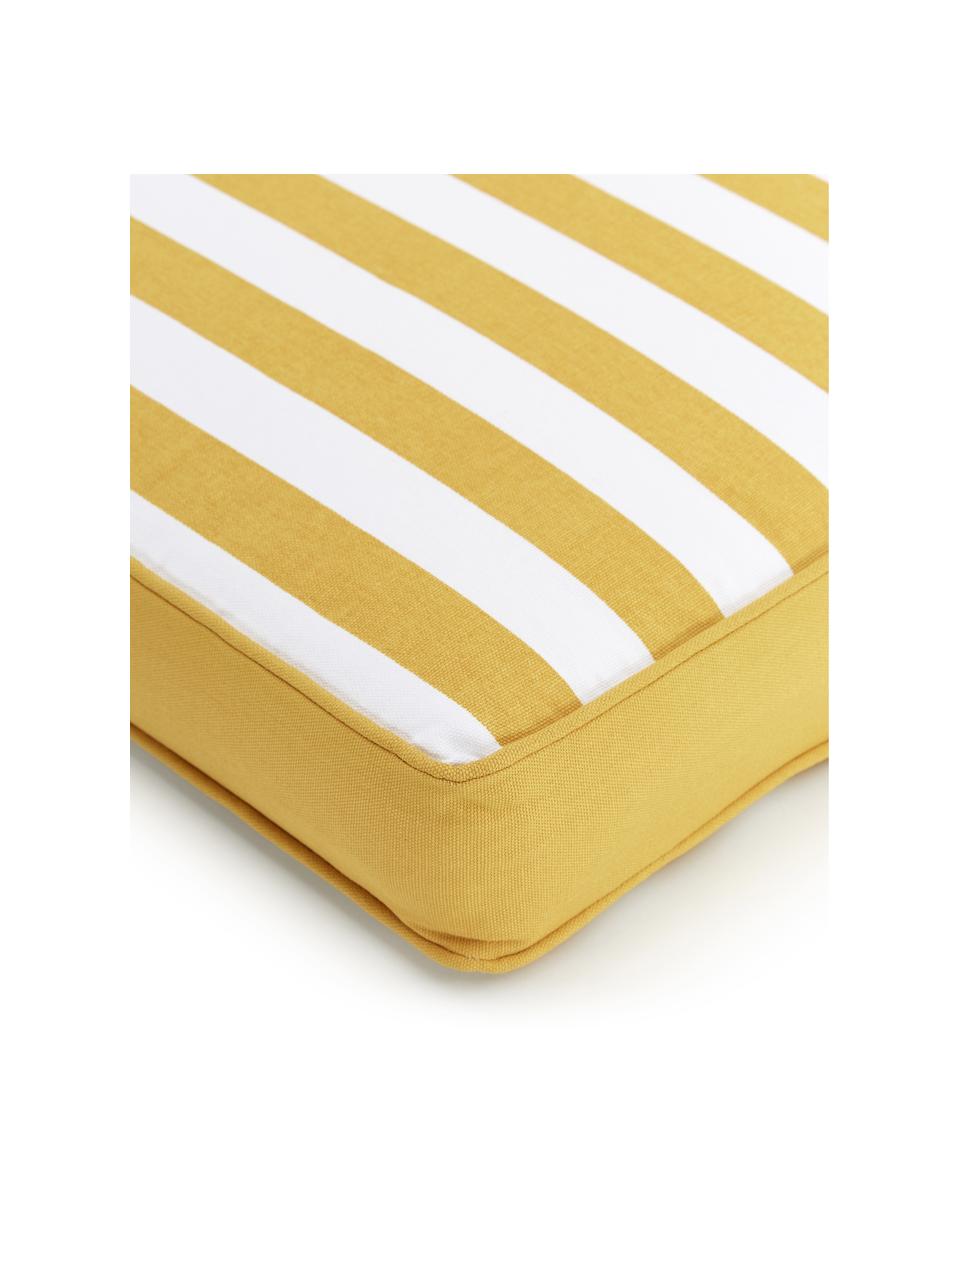 Hoog stoelkussen Timon in geel/wit, gestreept, Geel & wit, gestreept, B 40 x L 40 cm